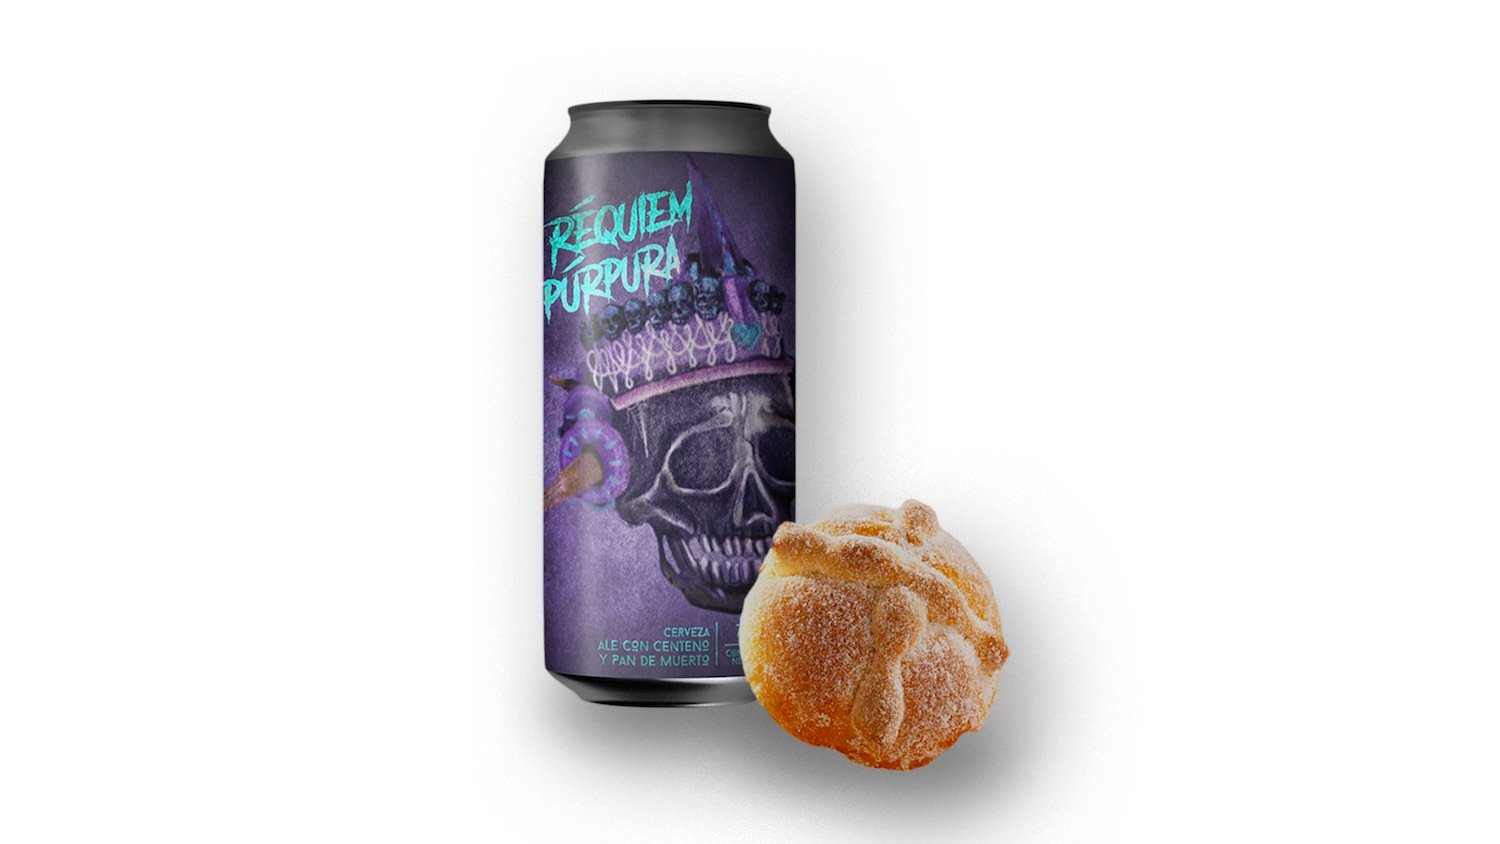 cerveza pan de muerto réquiem púrpura